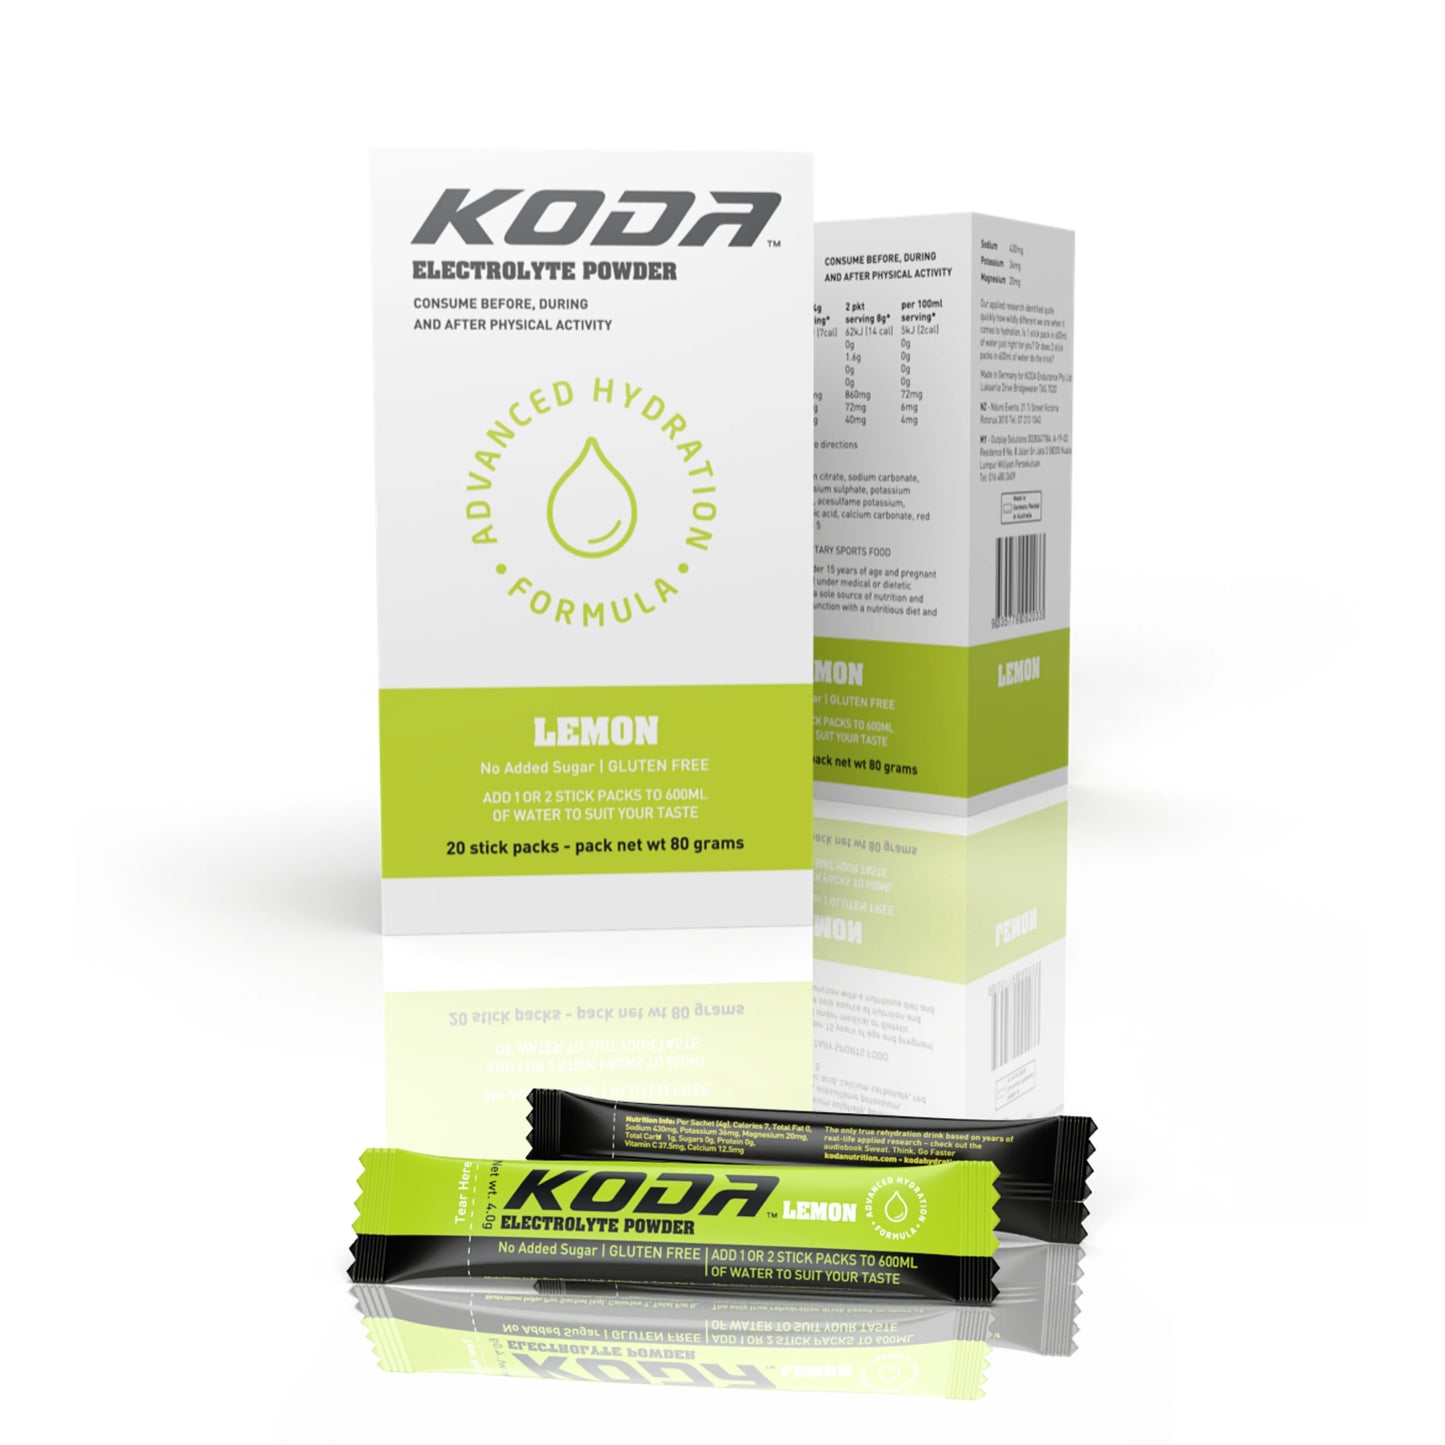 KODA Electrolyte Powder 20 Stick Pack | Lemon